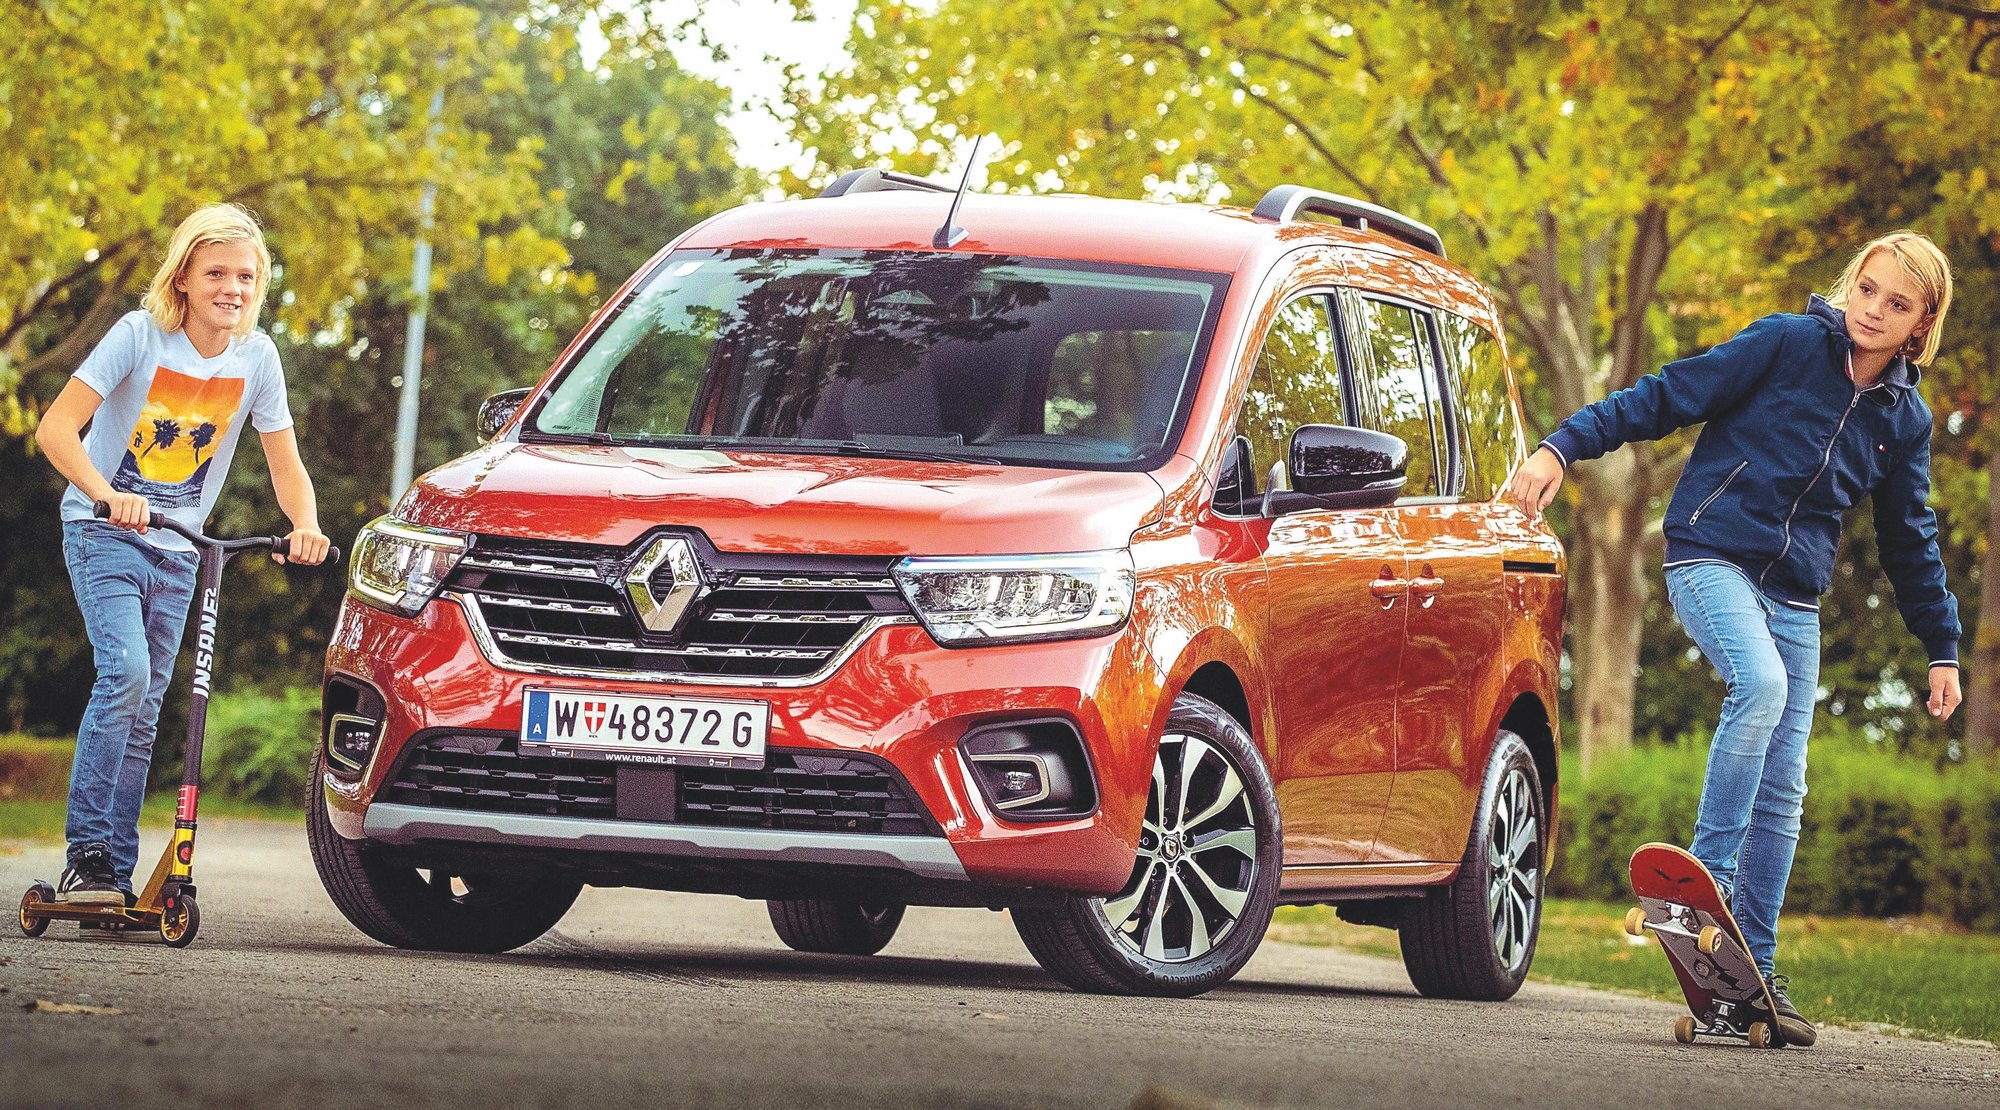 Familienauto aus Frankreich: Charmante SUV-Alternative: Der neue Renault  Kangoo im Test